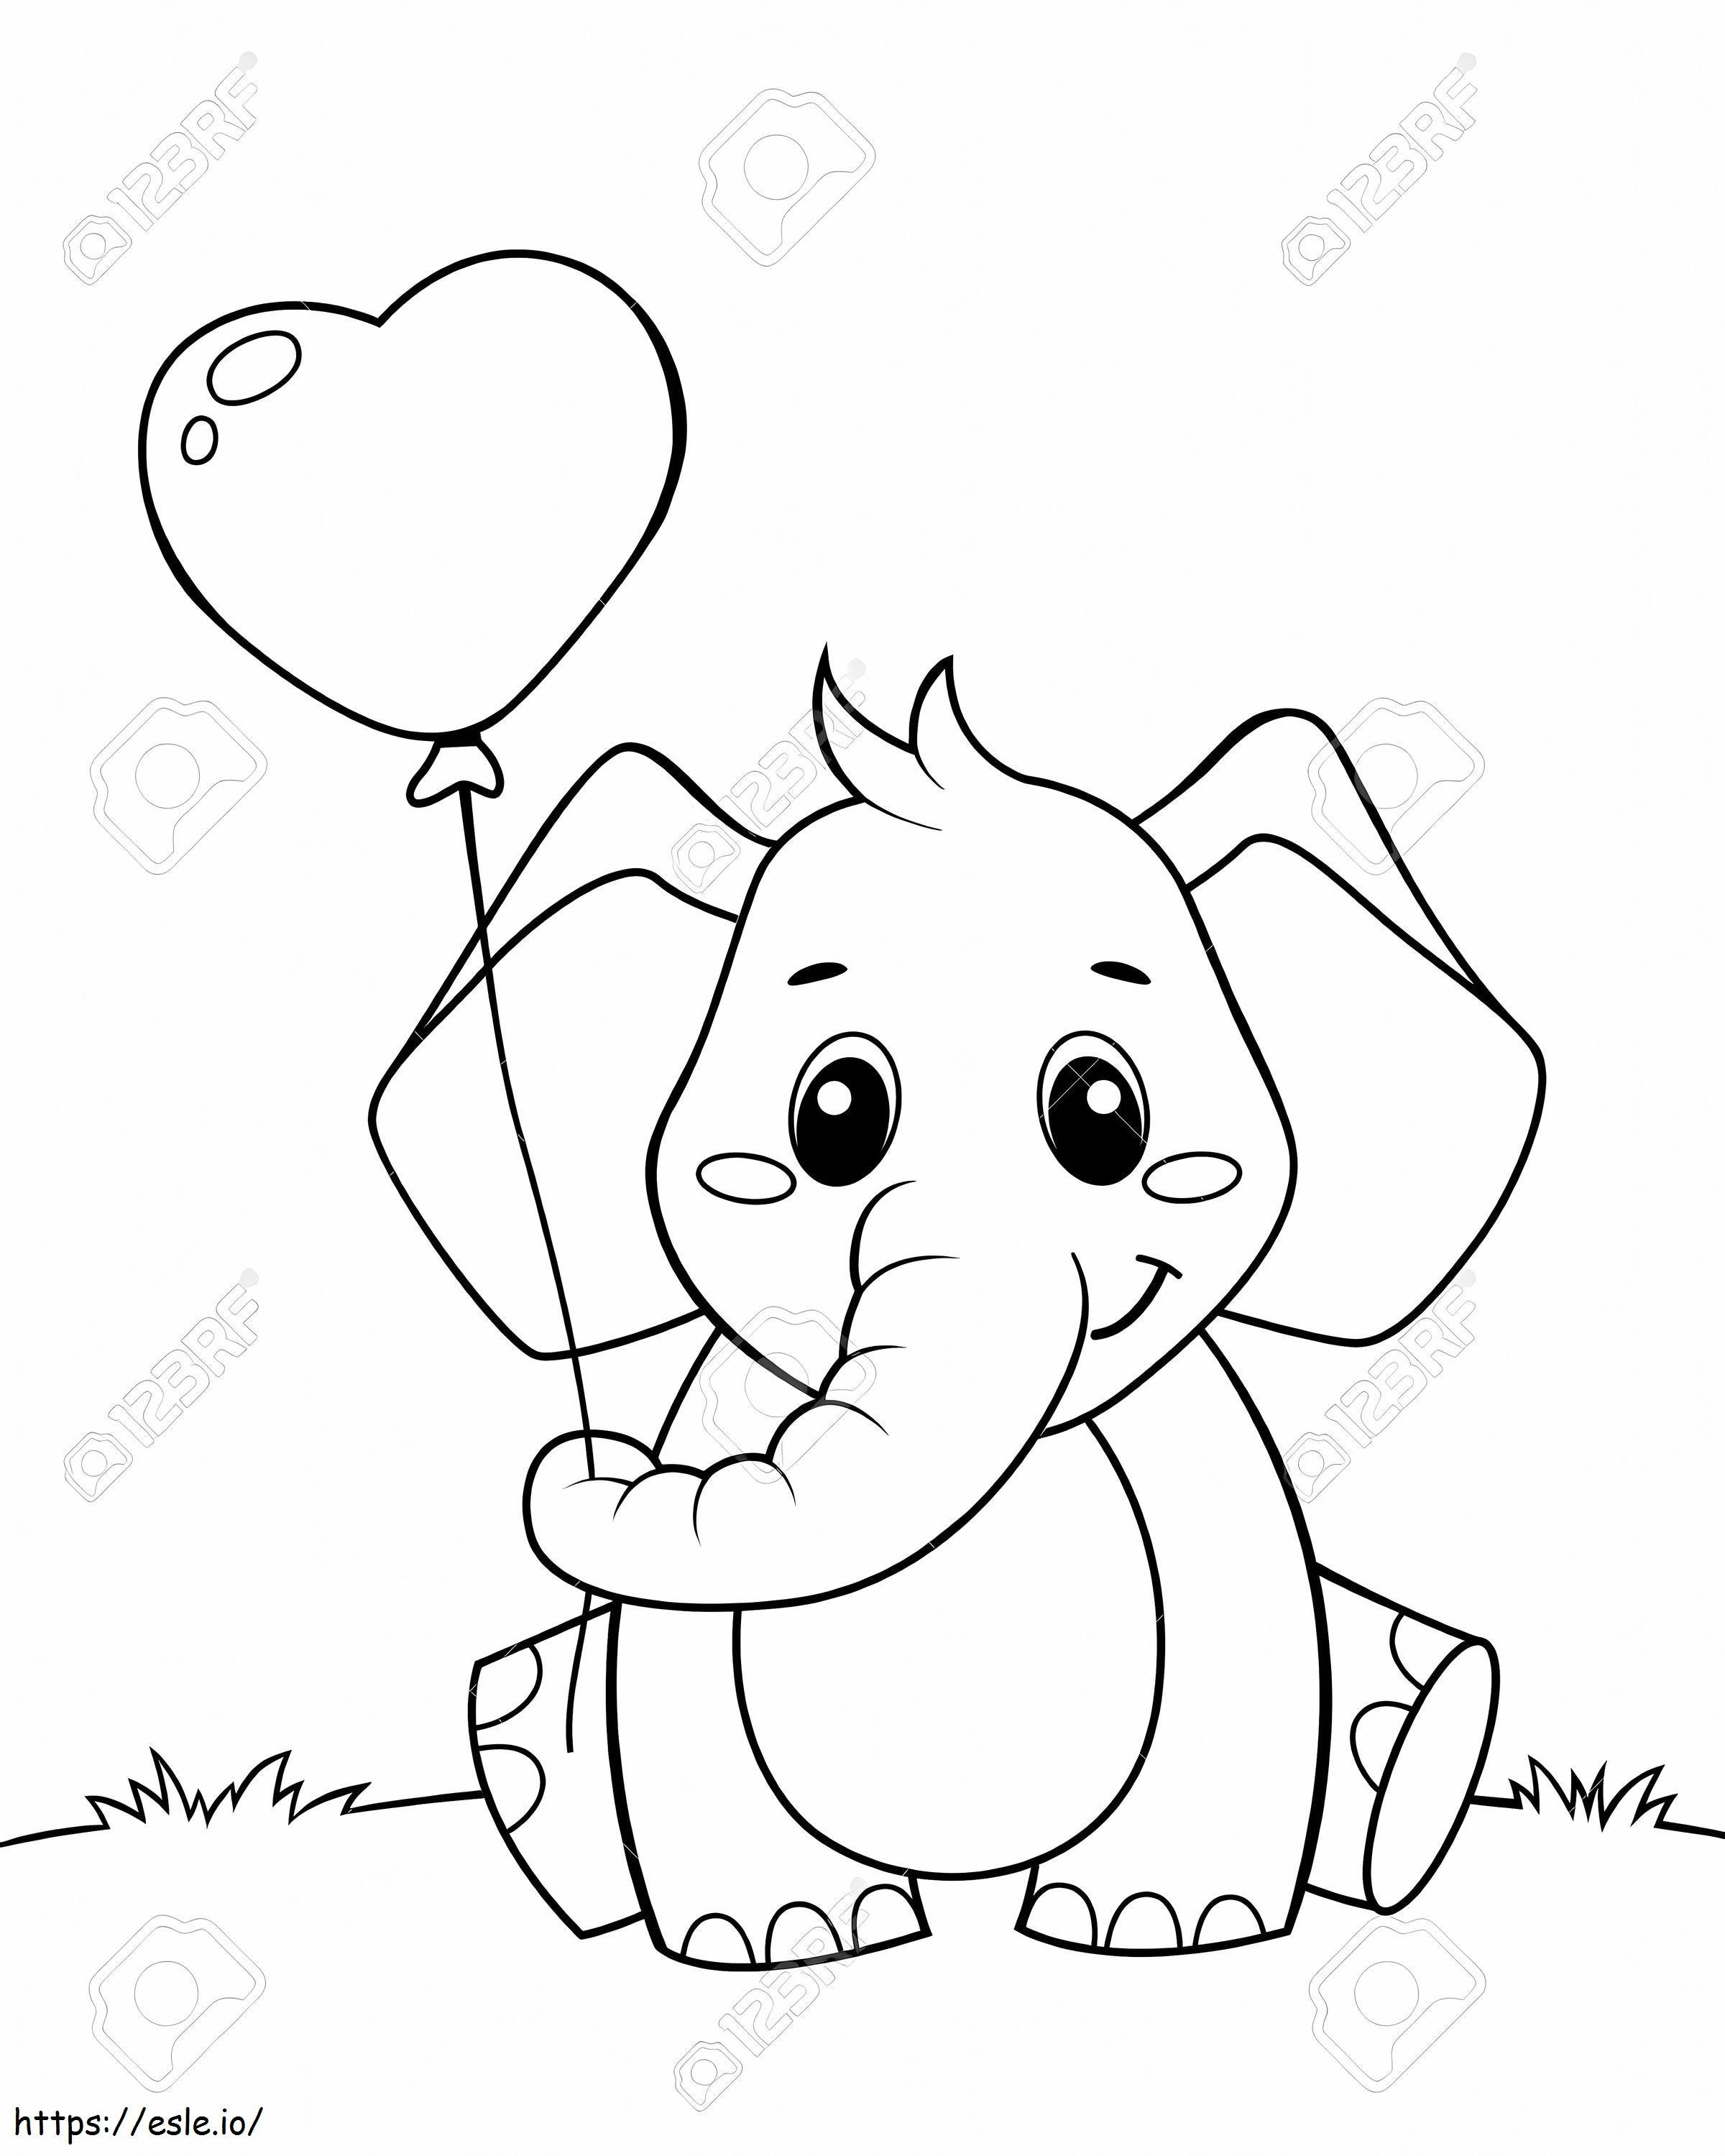  Elefant drăguț ținând balon în formă de inimă Ilustrație vectorială alb-negru pentru colorat de colorat